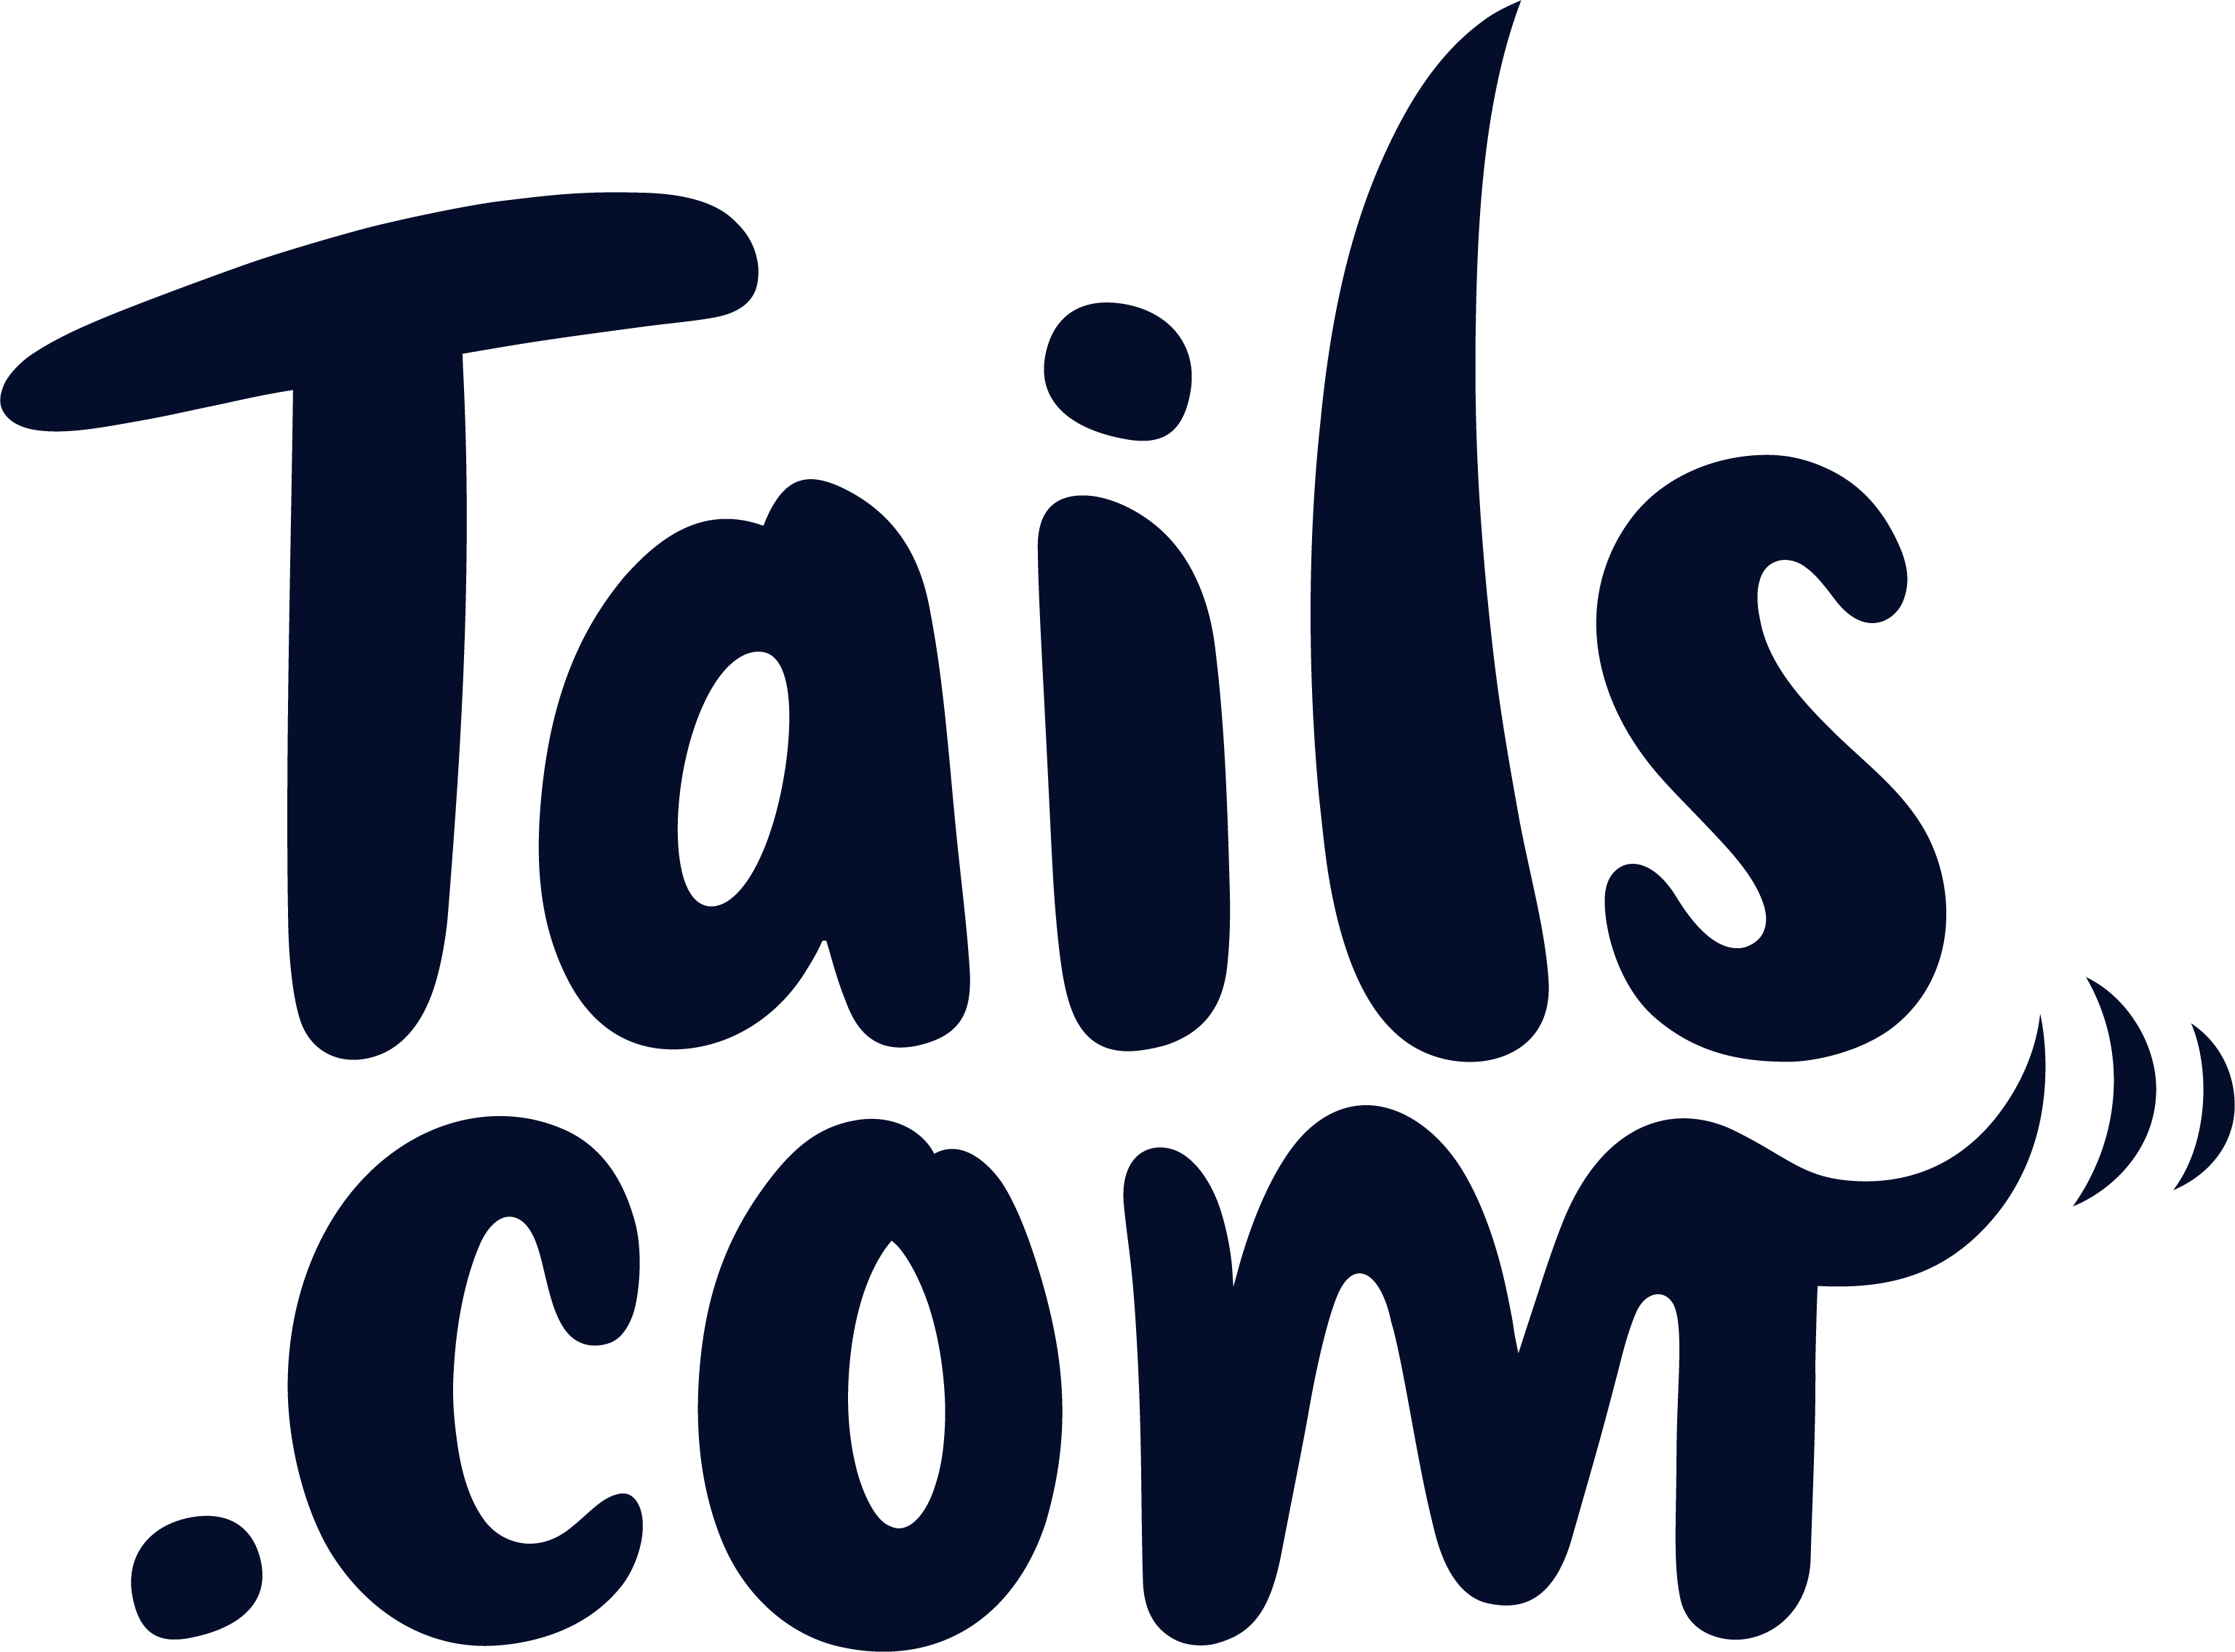 Tails.com